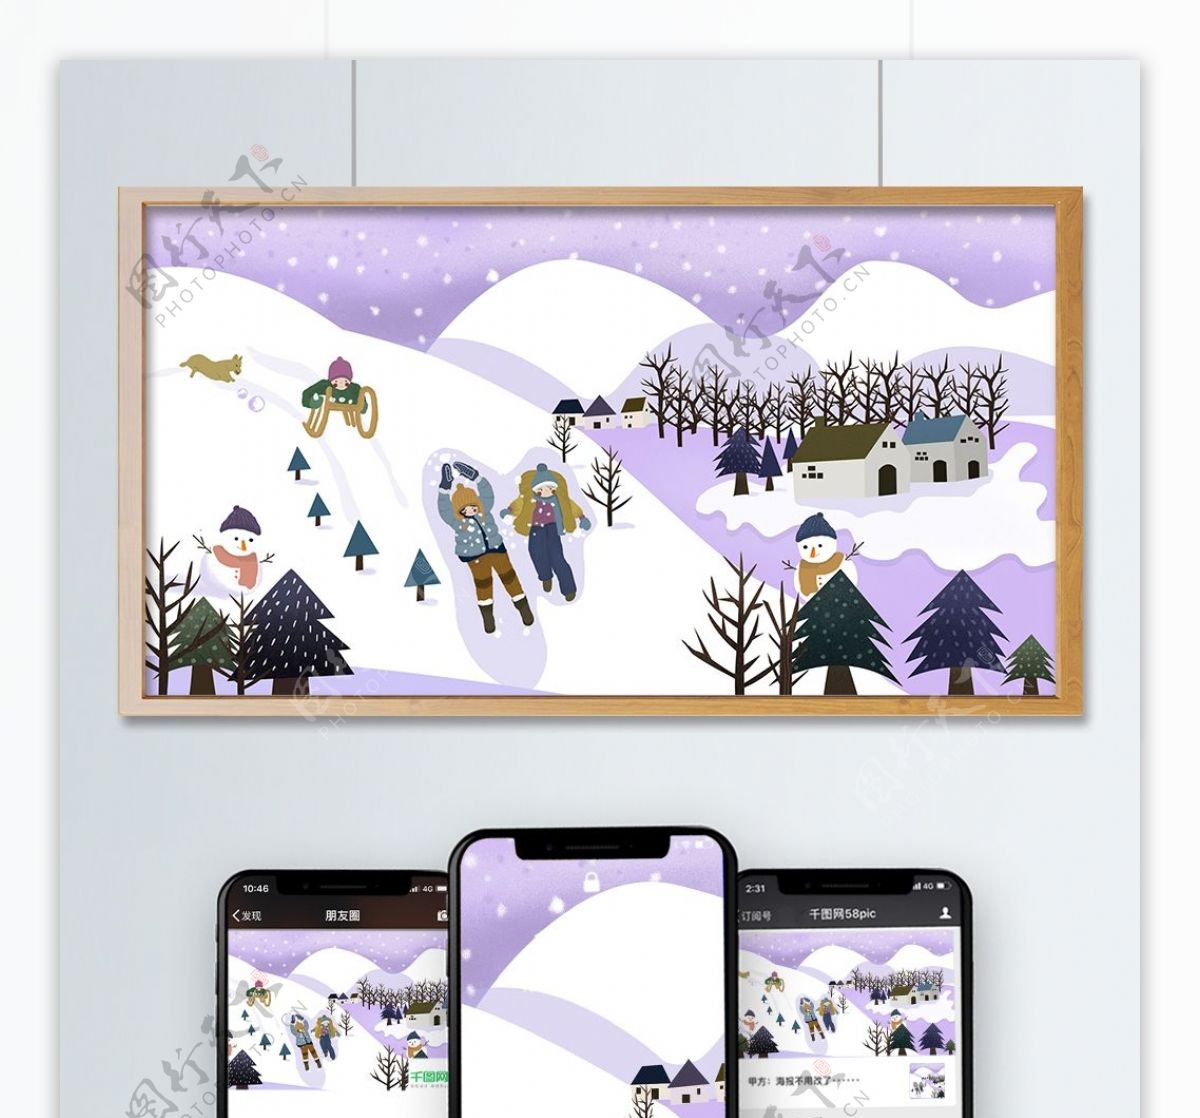 冬季孩子们在雪地上欢快玩耍小清新治愈插画